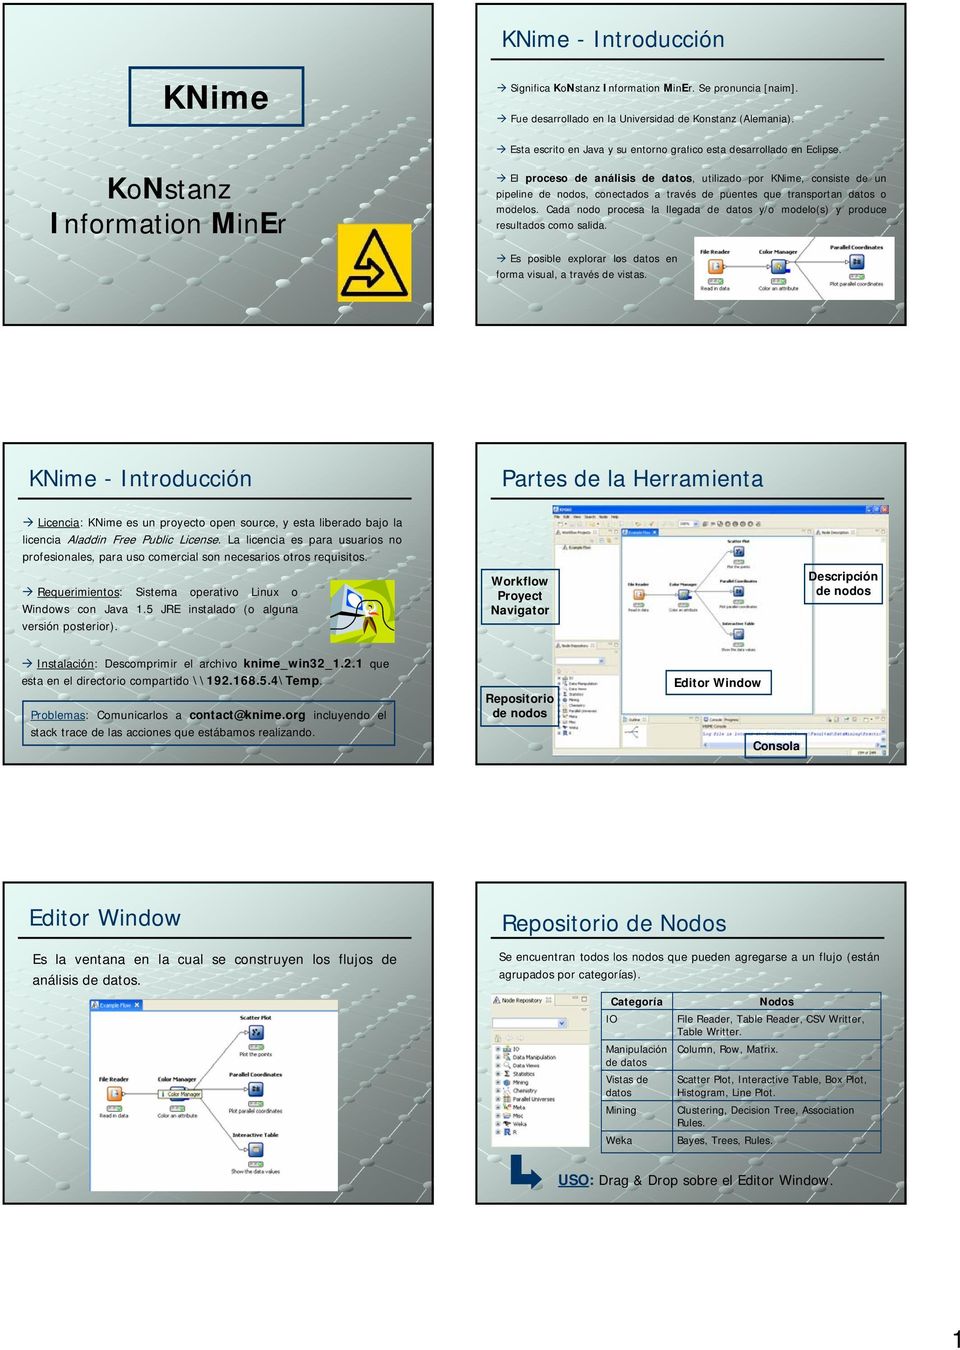 KoNstanz Information MinEr El proceso de análisis de datos, utilizado por KNime, consiste de un pipeline de nodos, conectados a través de puentes que transportan datos o modelos.